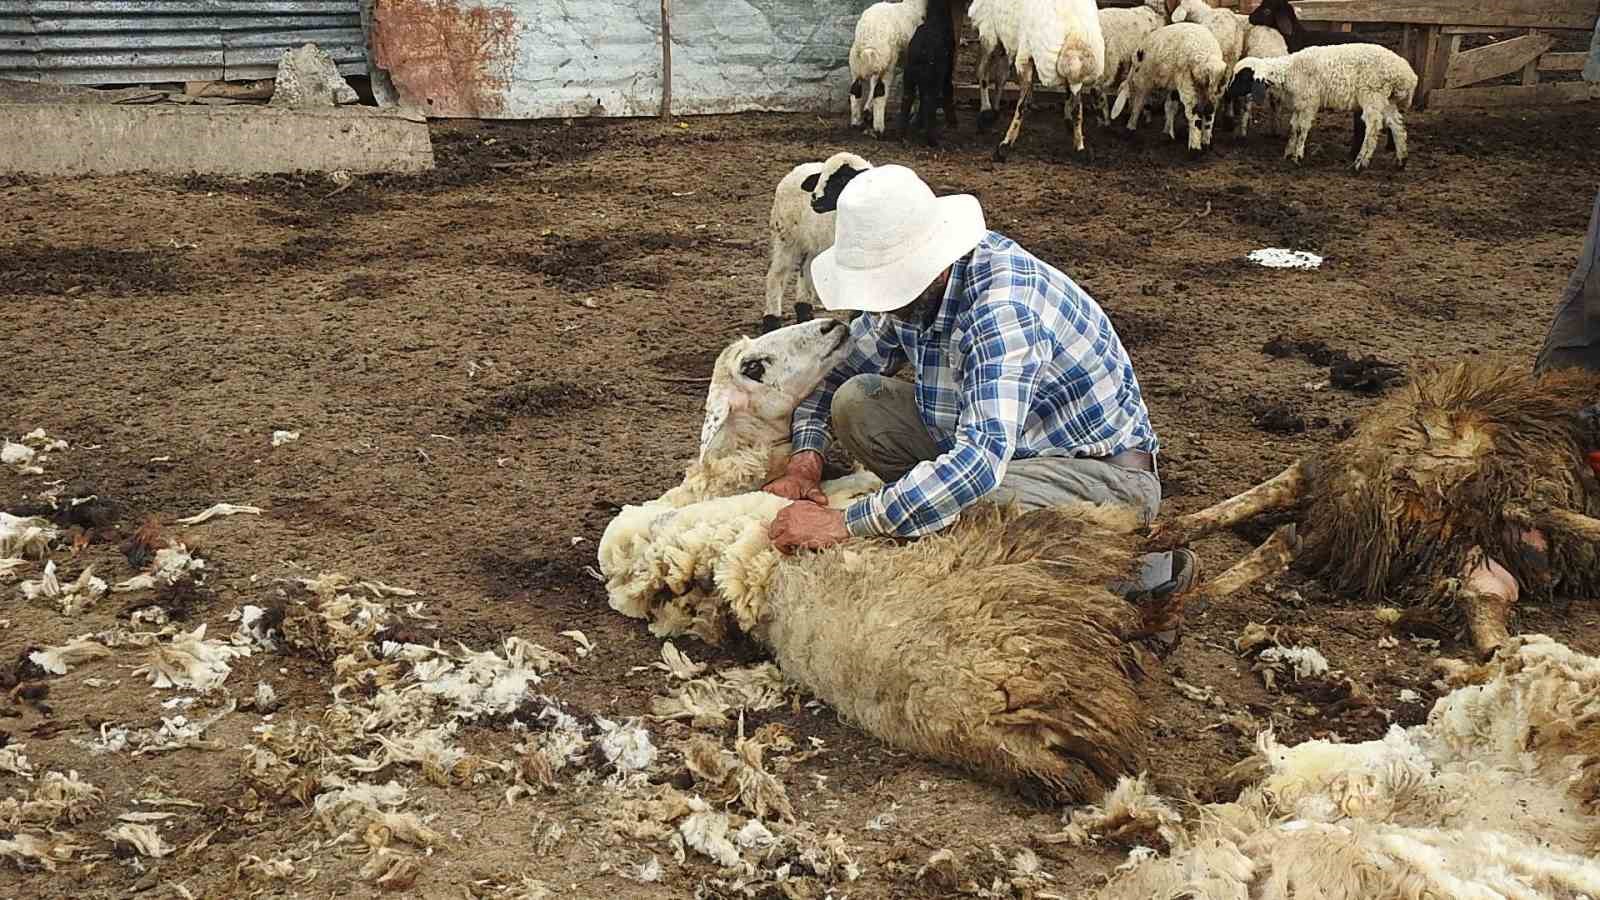 Kurt sürüsü 17 koyunu telef etti